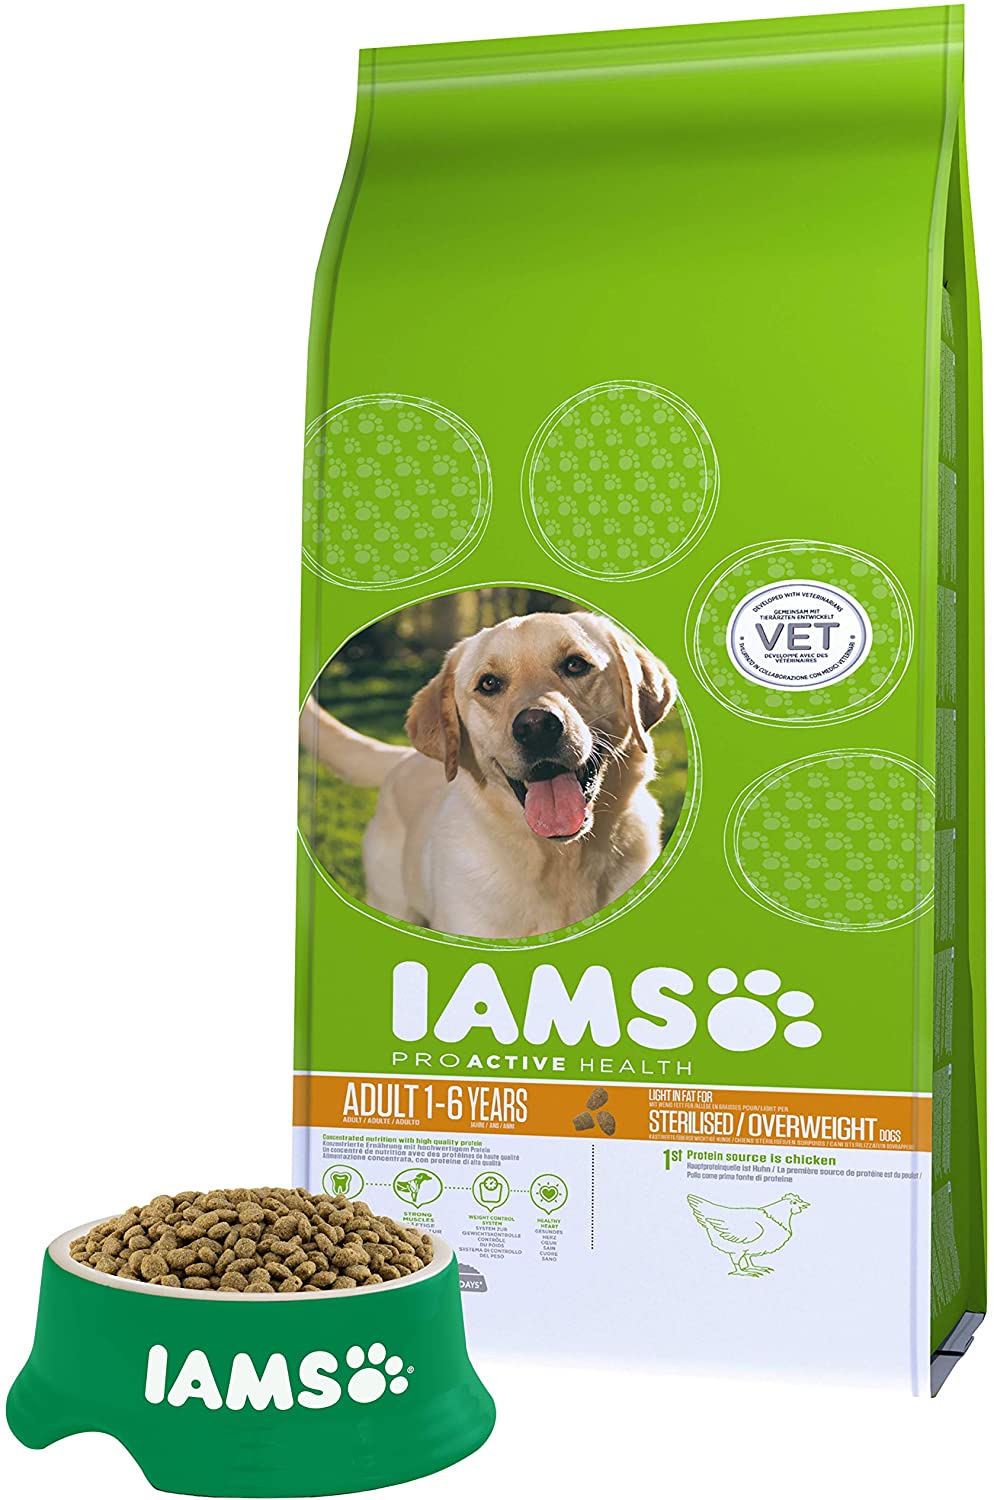  IAMS for Vitality Light in fat Alimento para Perros con Pollo Fresco [12 kg] 